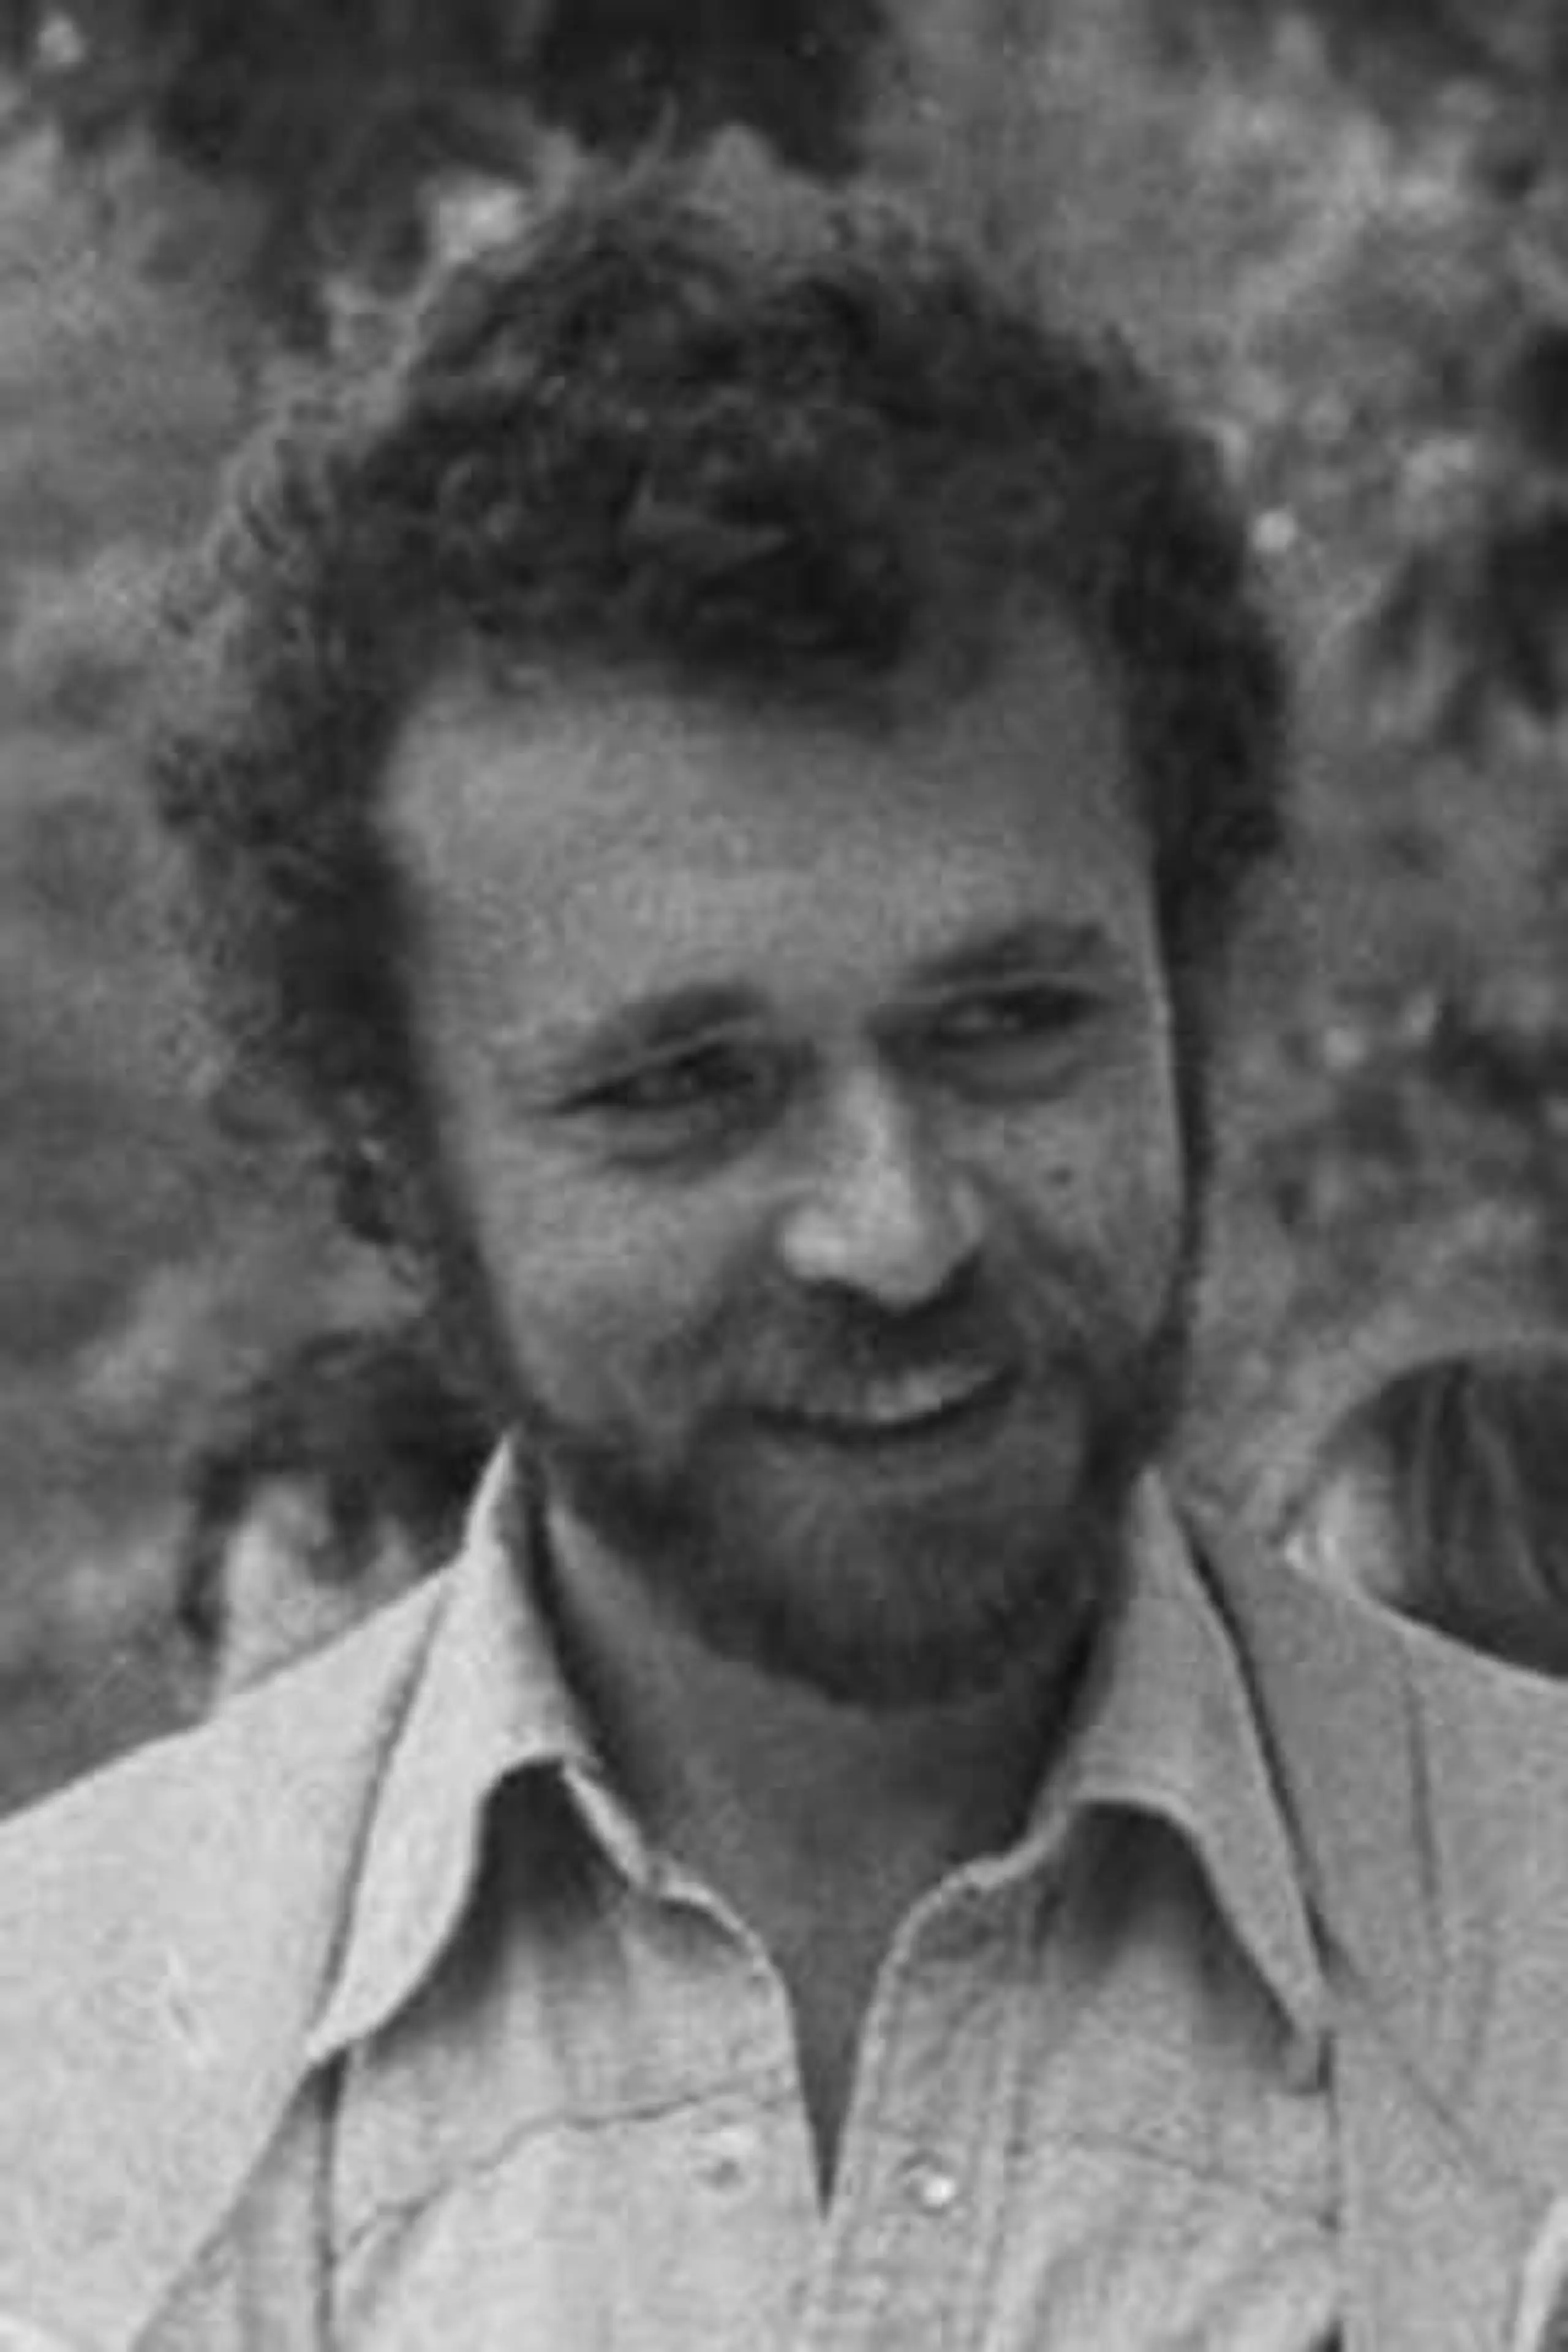 Francis Mankiewicz